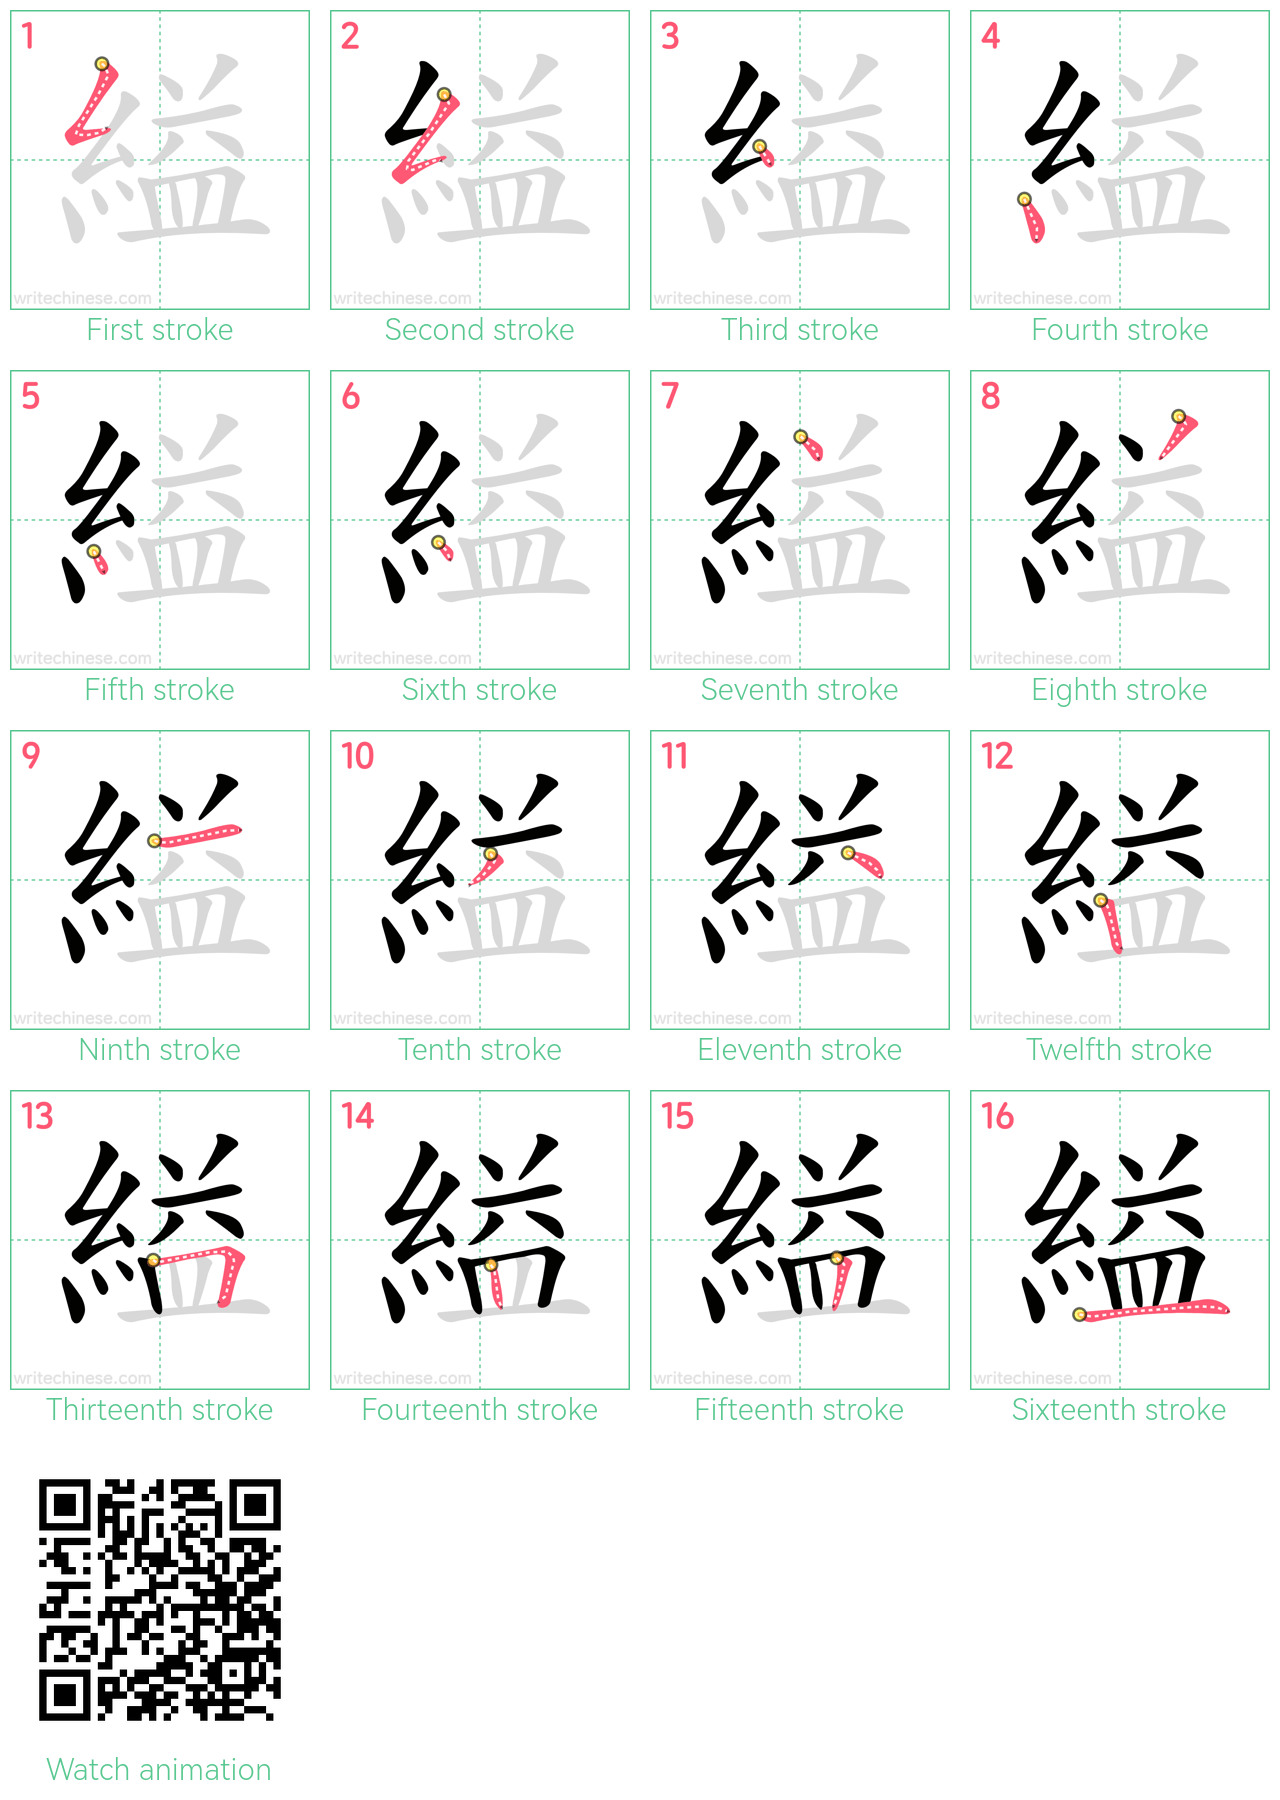 縊 step-by-step stroke order diagrams